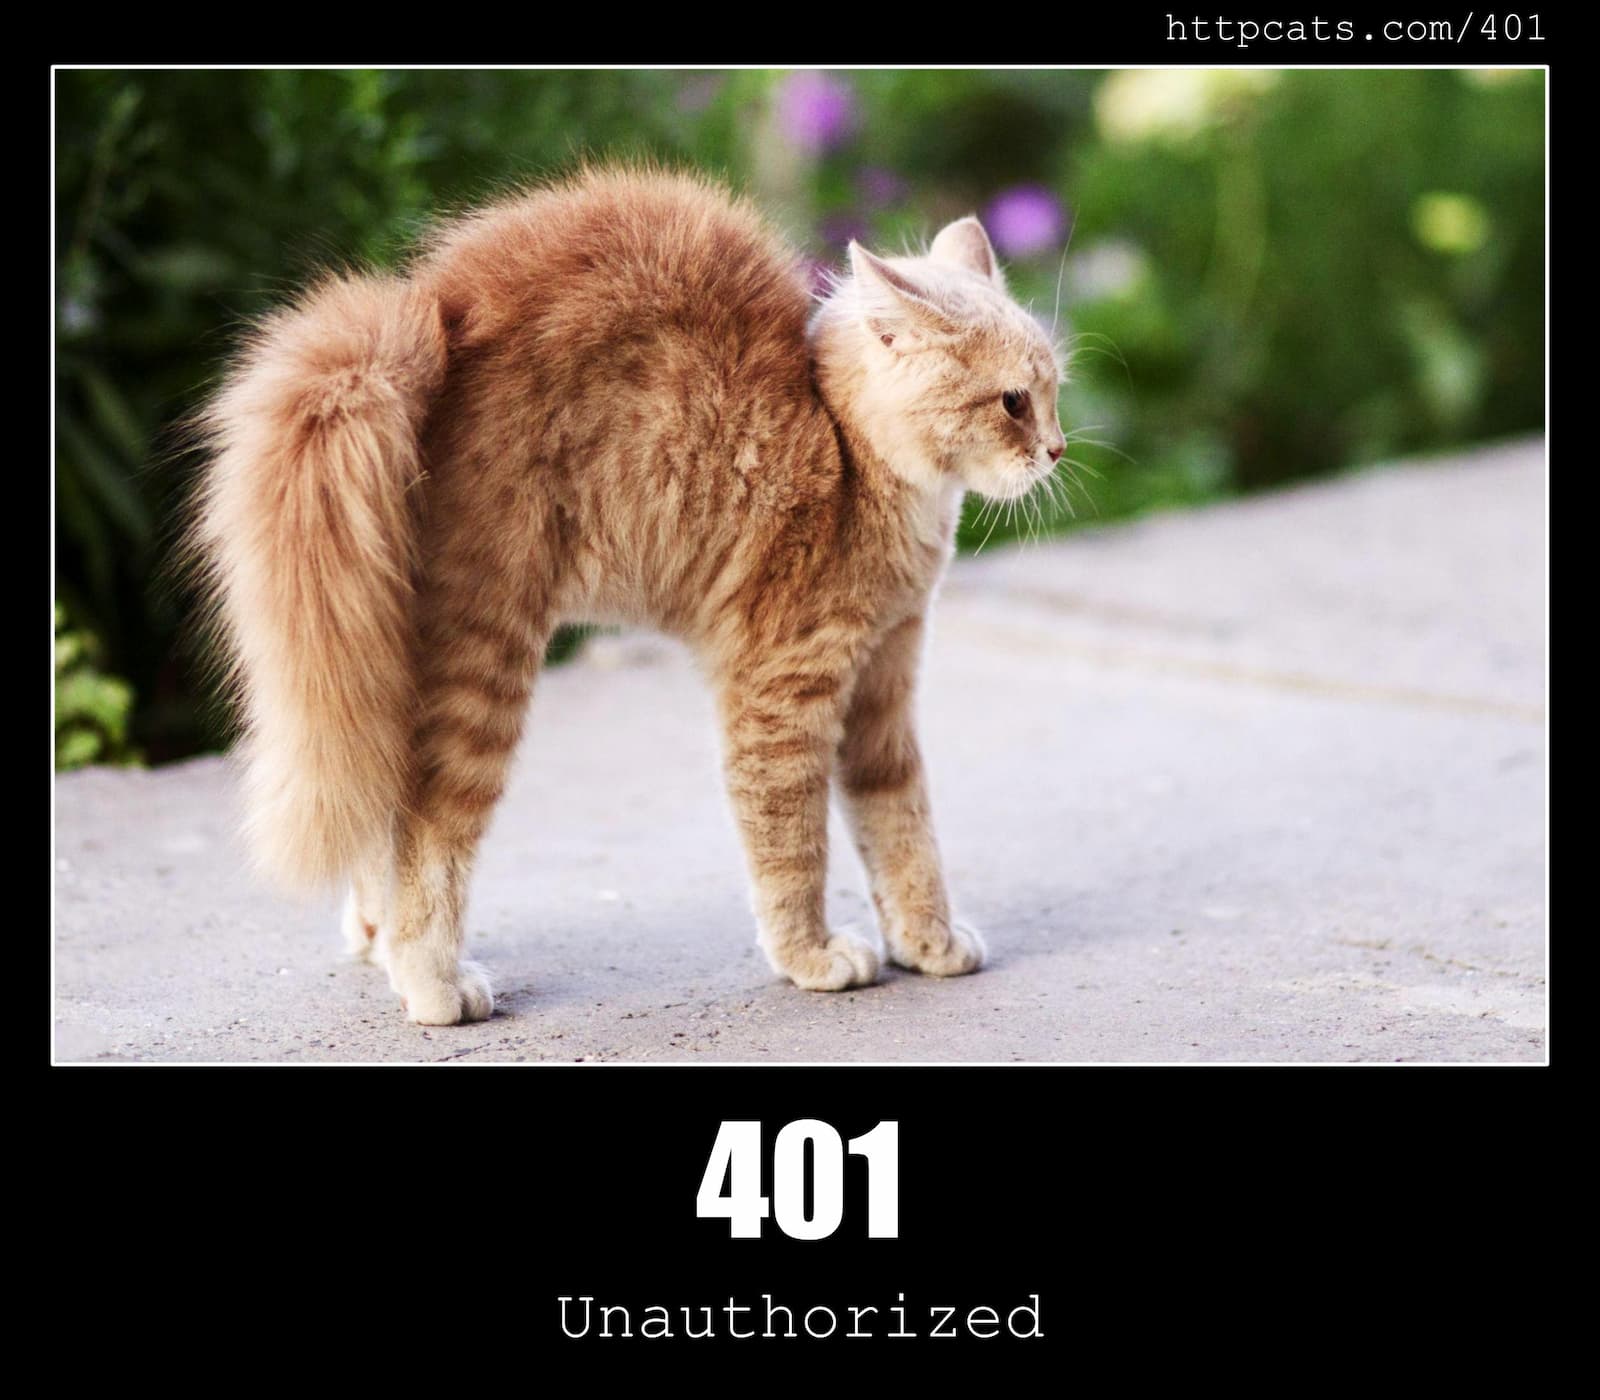 HTTP Status Code 401 Unauthorized & Cats